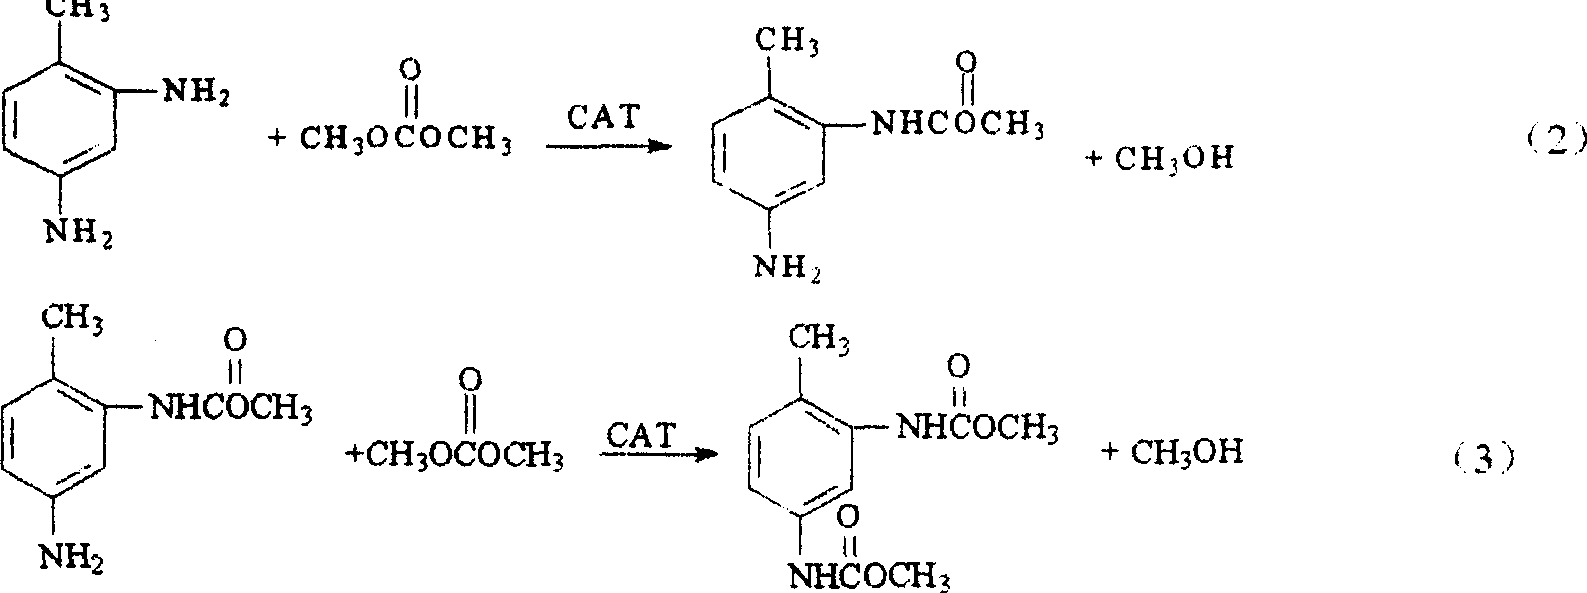 Method for preparing 2,4-toluene diamino menthyl formate